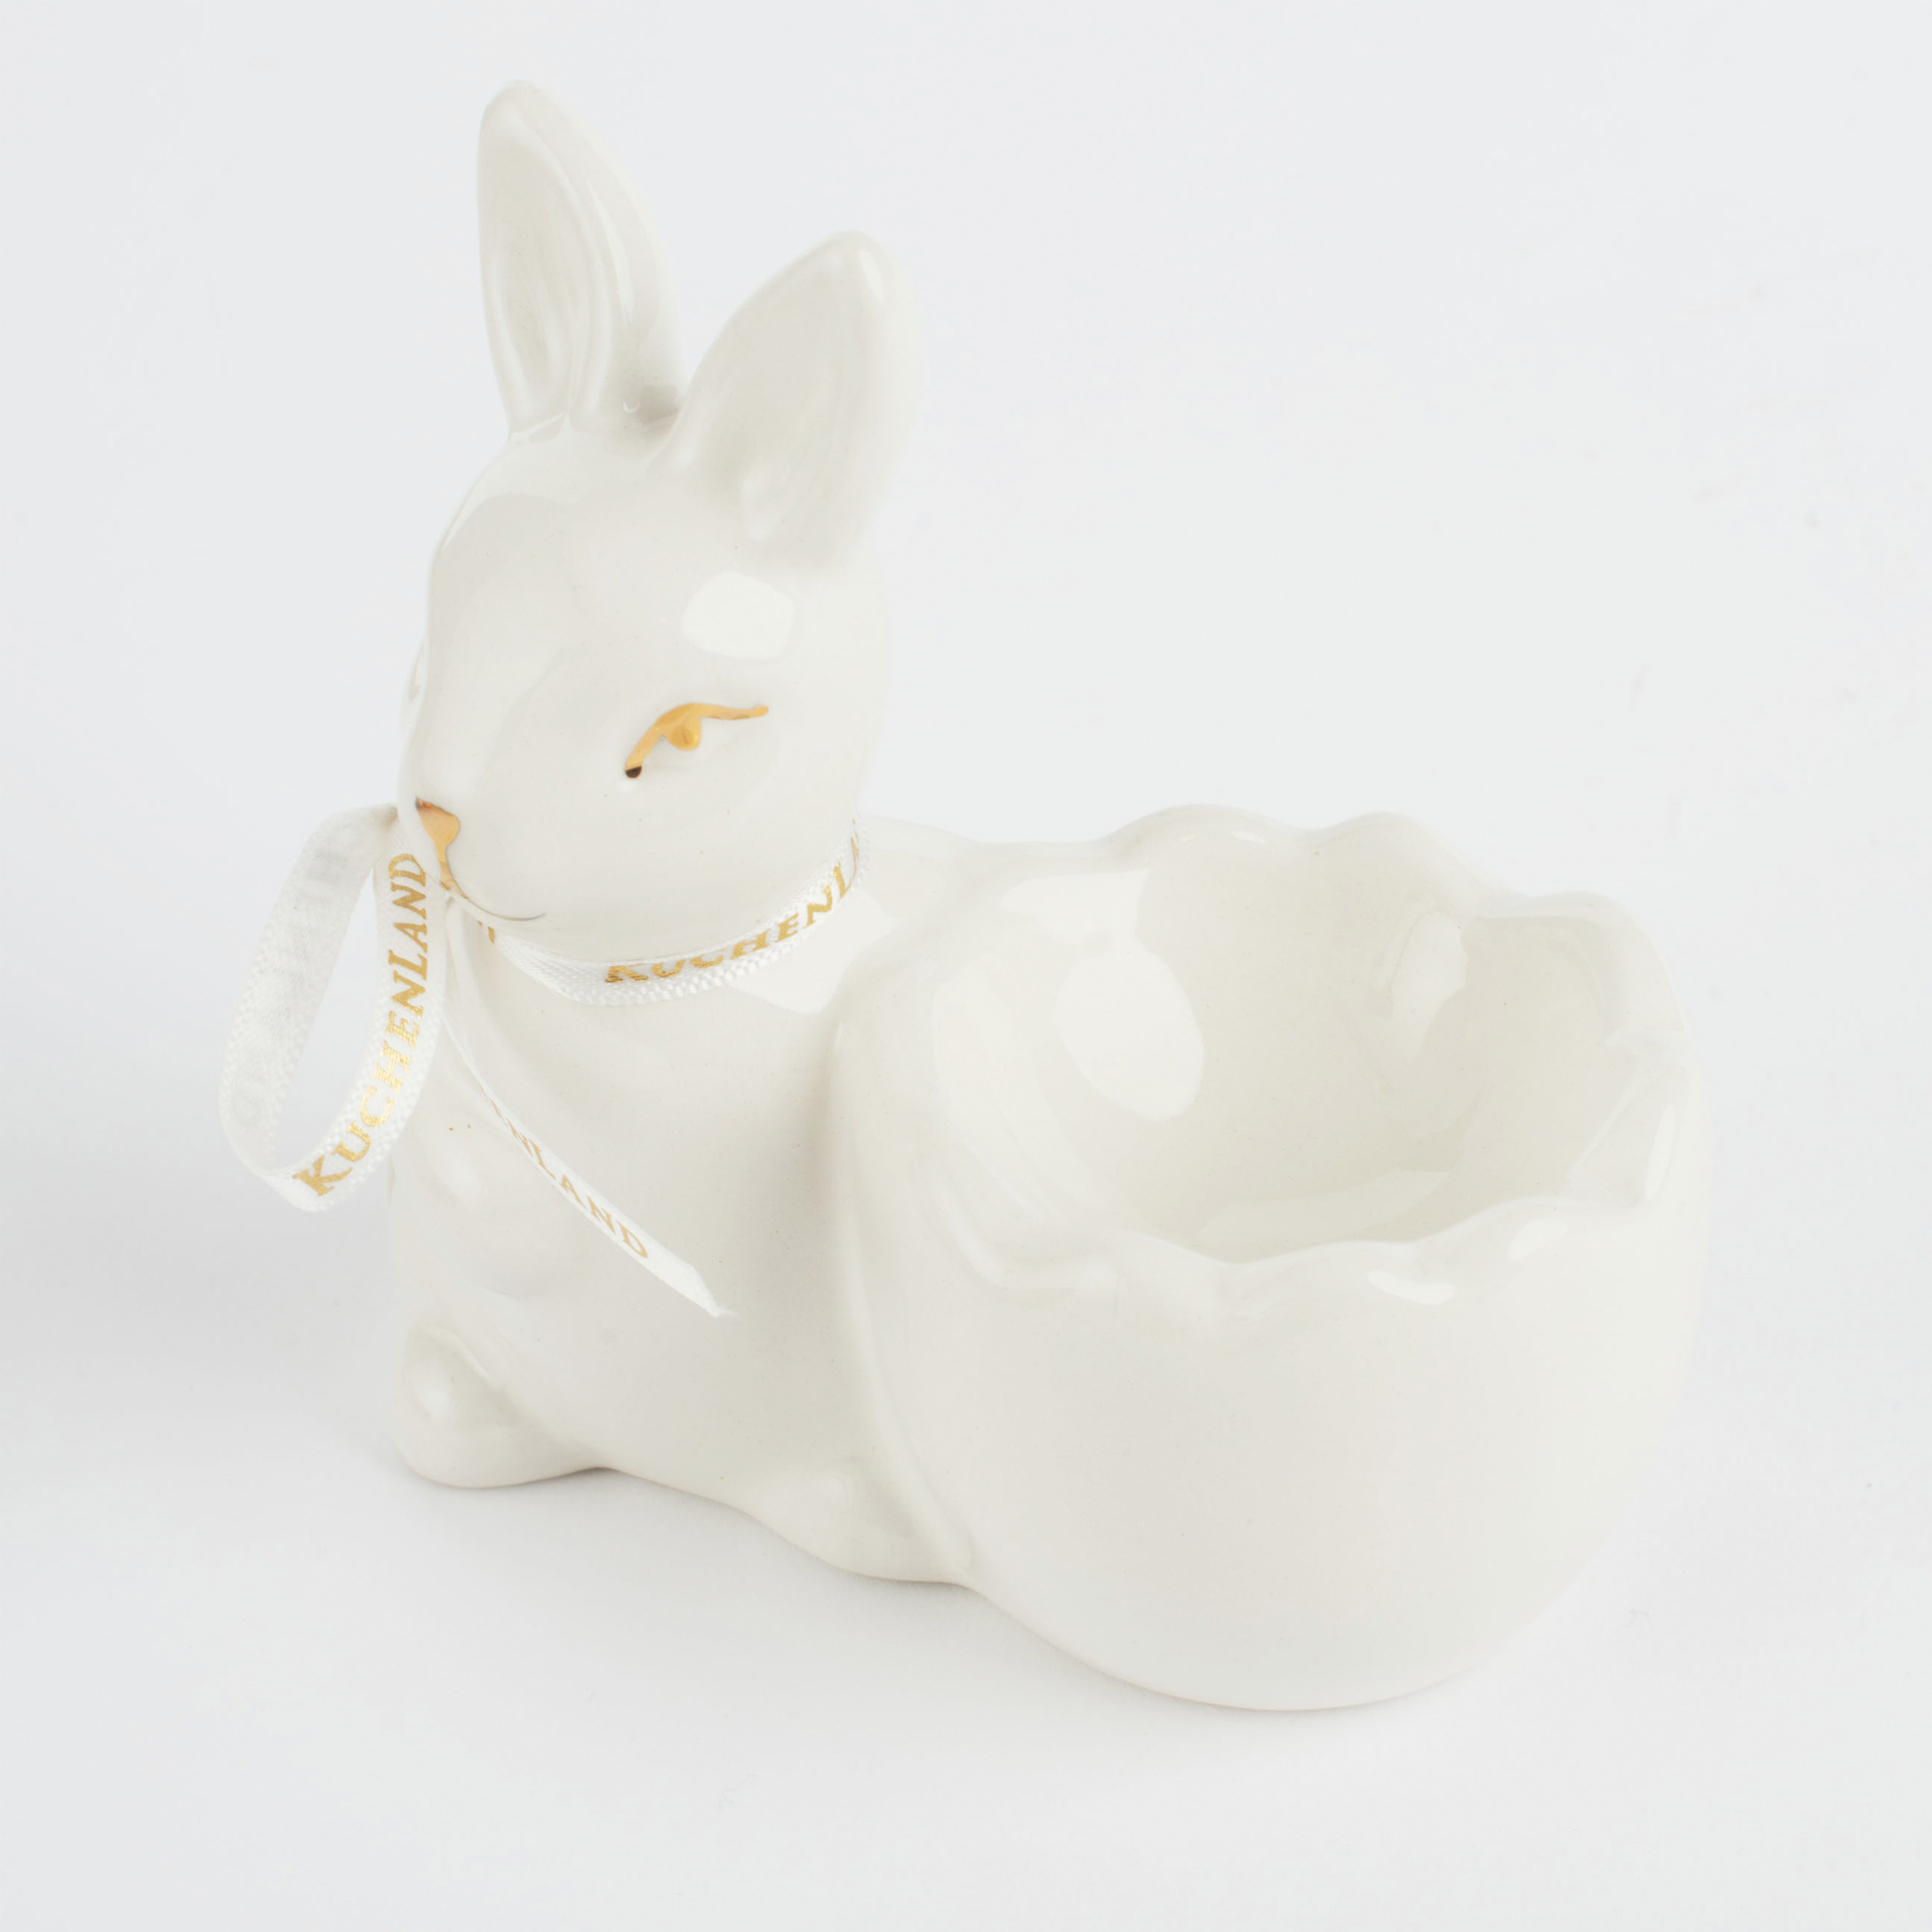 Подставка для яйца, 10 см, керамика, бело-золотистая, Кролик со скорлупкой, Easter gold изображение № 2